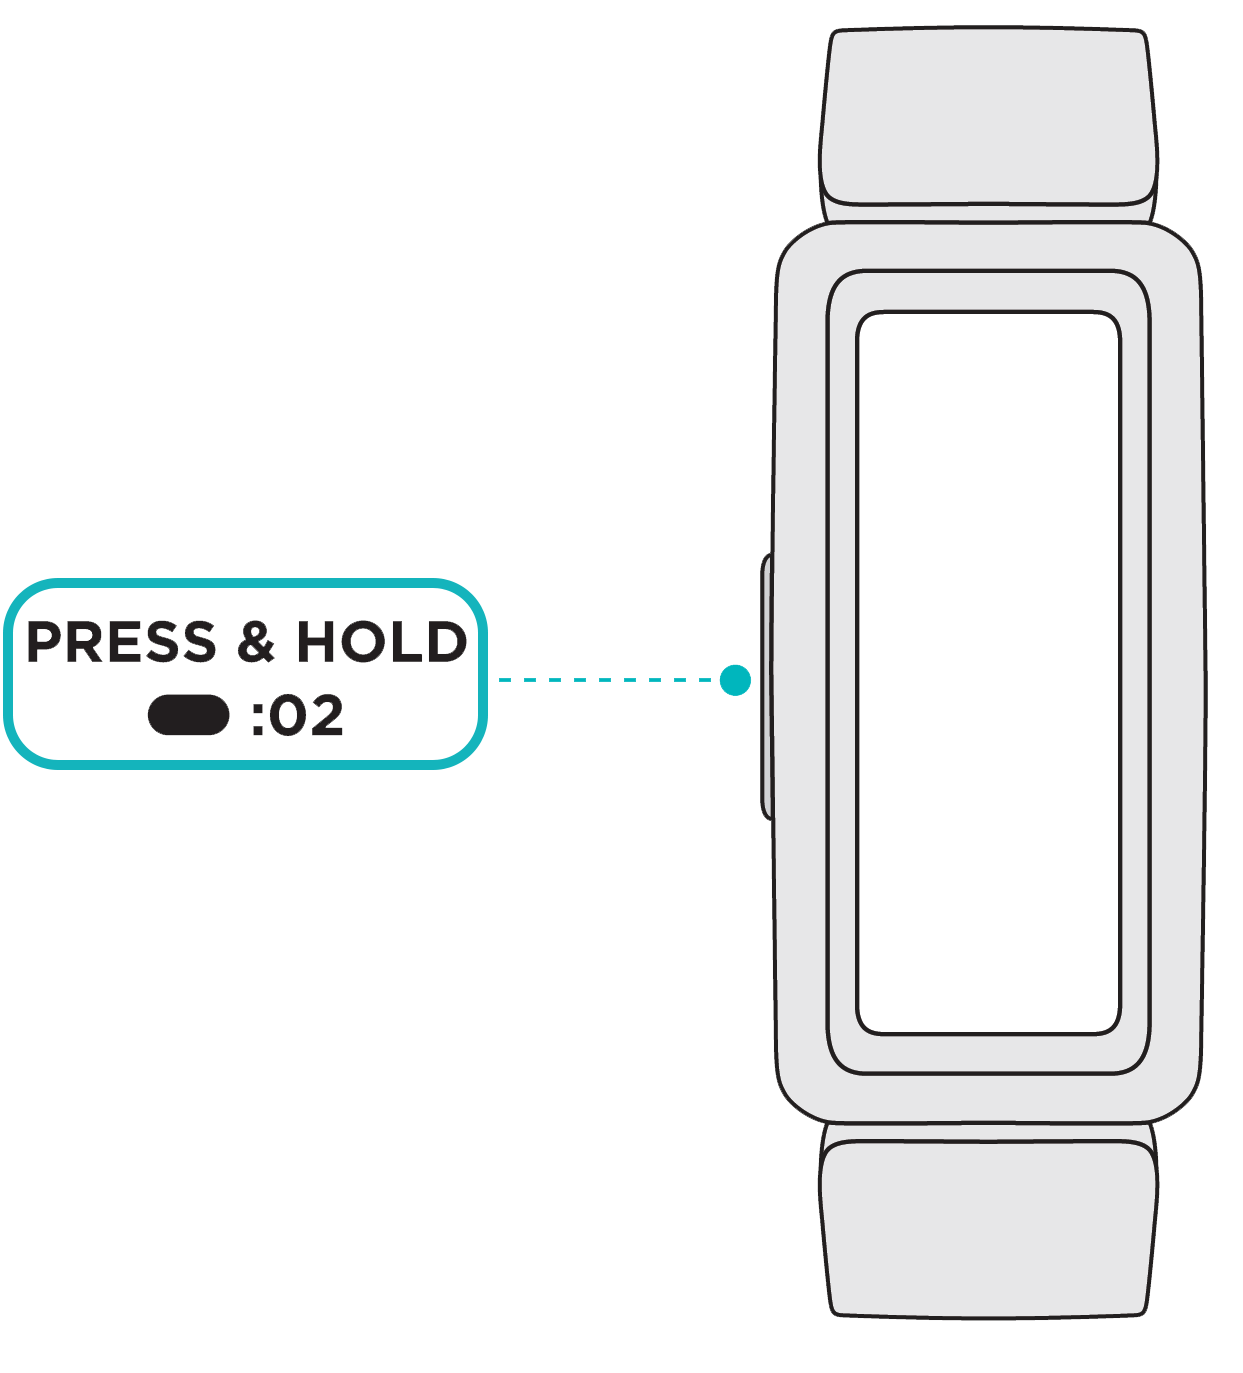 Fitbit デバイスを充電する方法を教えてください。